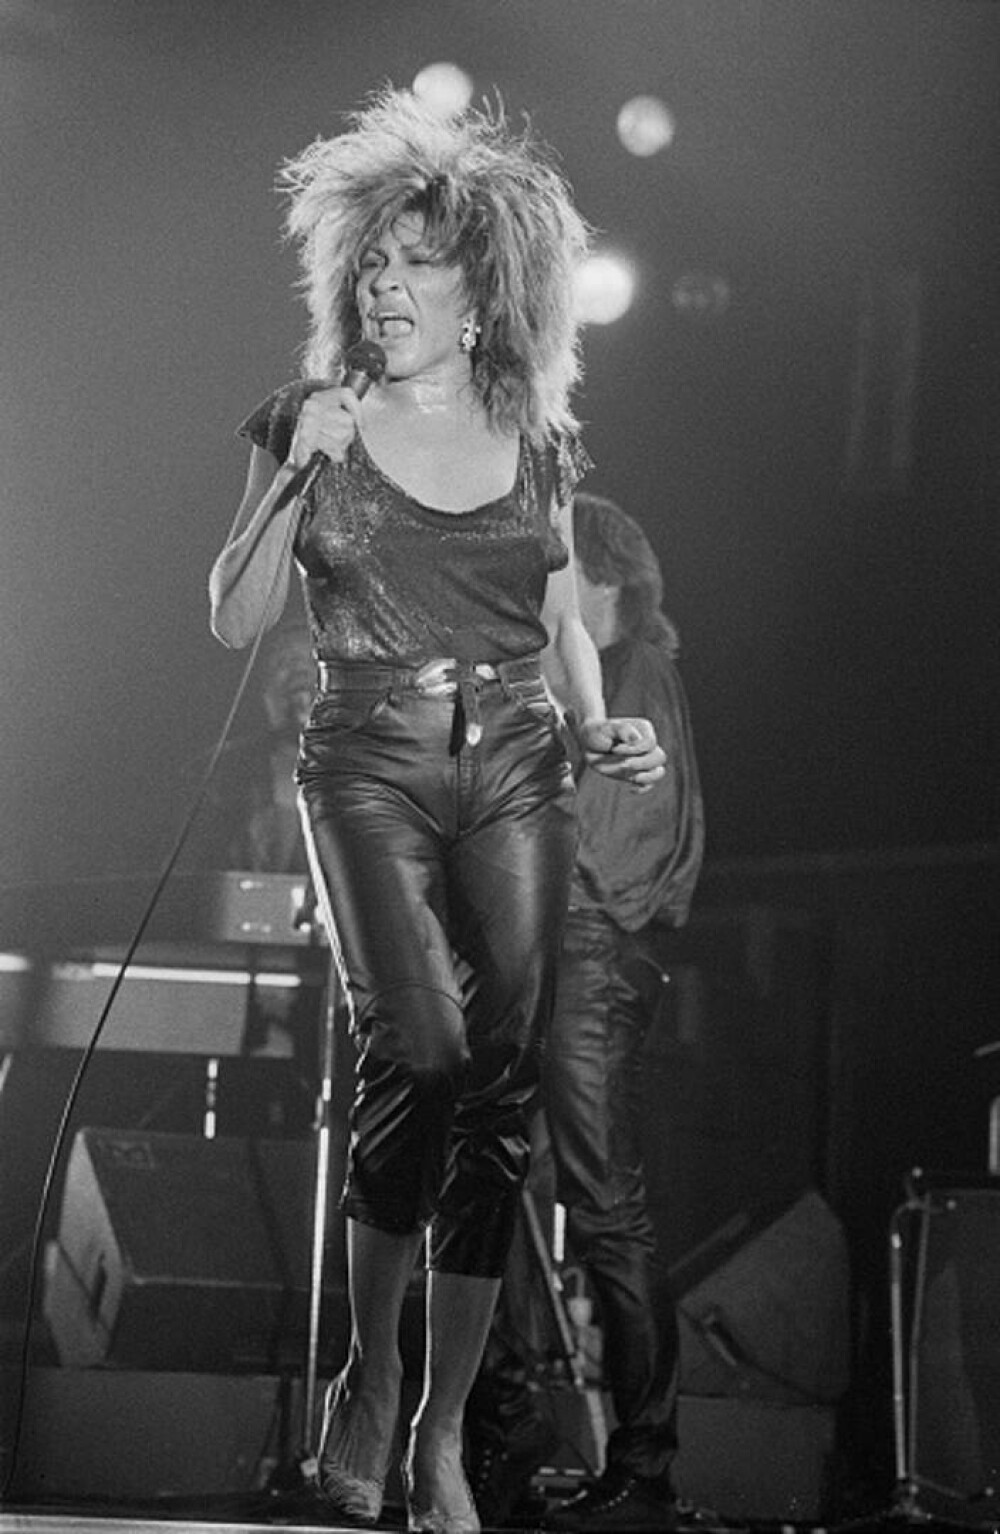 Tina Turner - viața tragică a unui artist legendar. Cântăreața a luat în calcul sinuciderea asistată - Imaginea 2